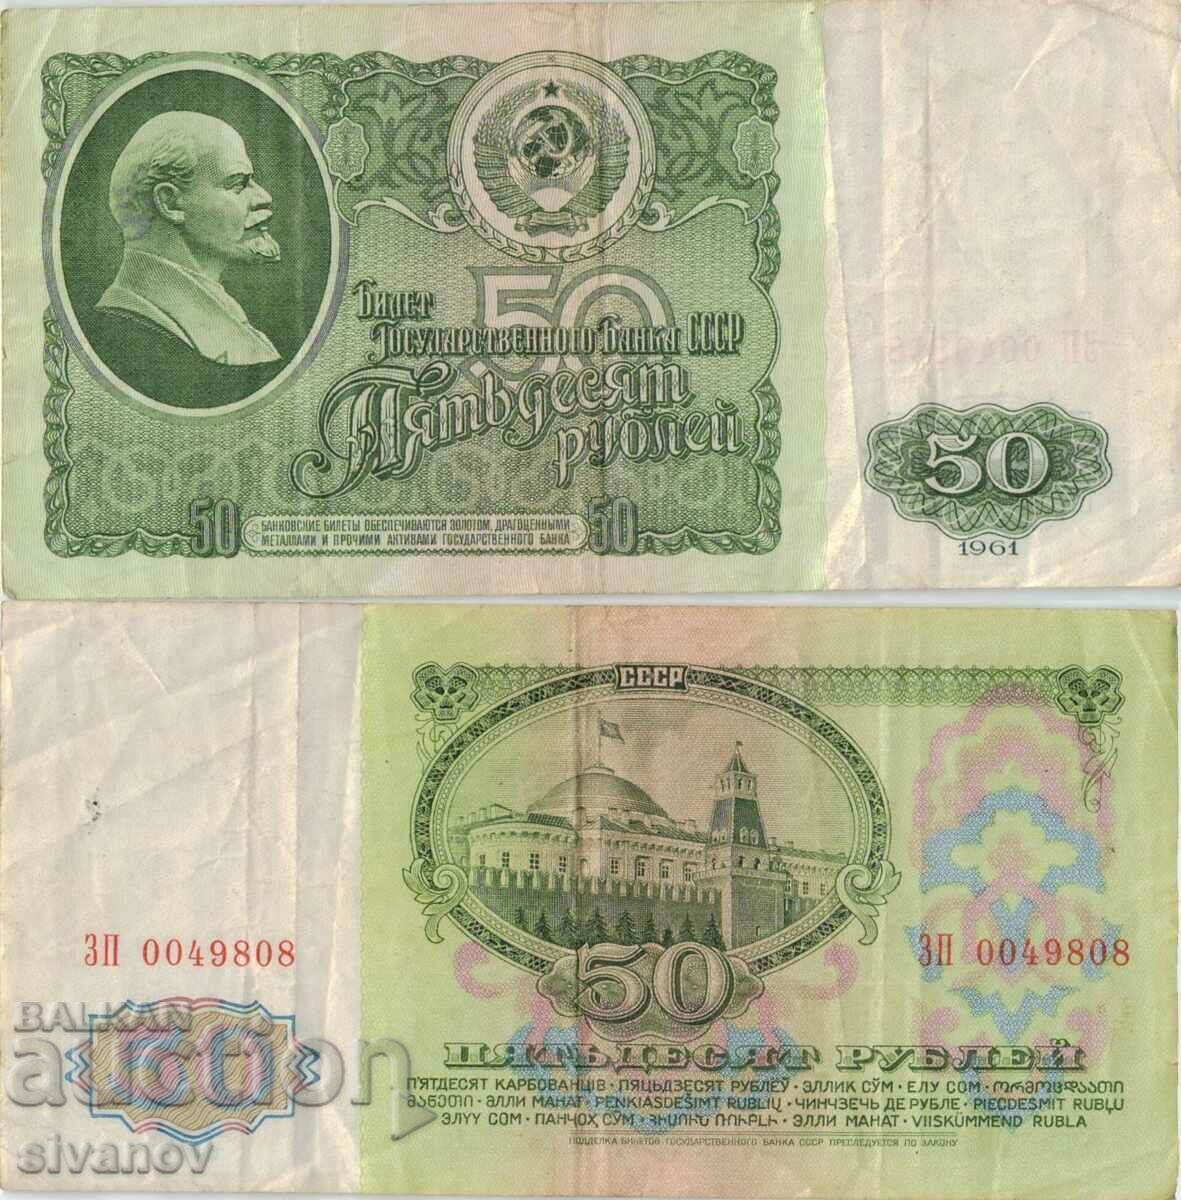 Uniunea Sovietică Rusia URSS 50 de ruble 1961 bancnota #5349